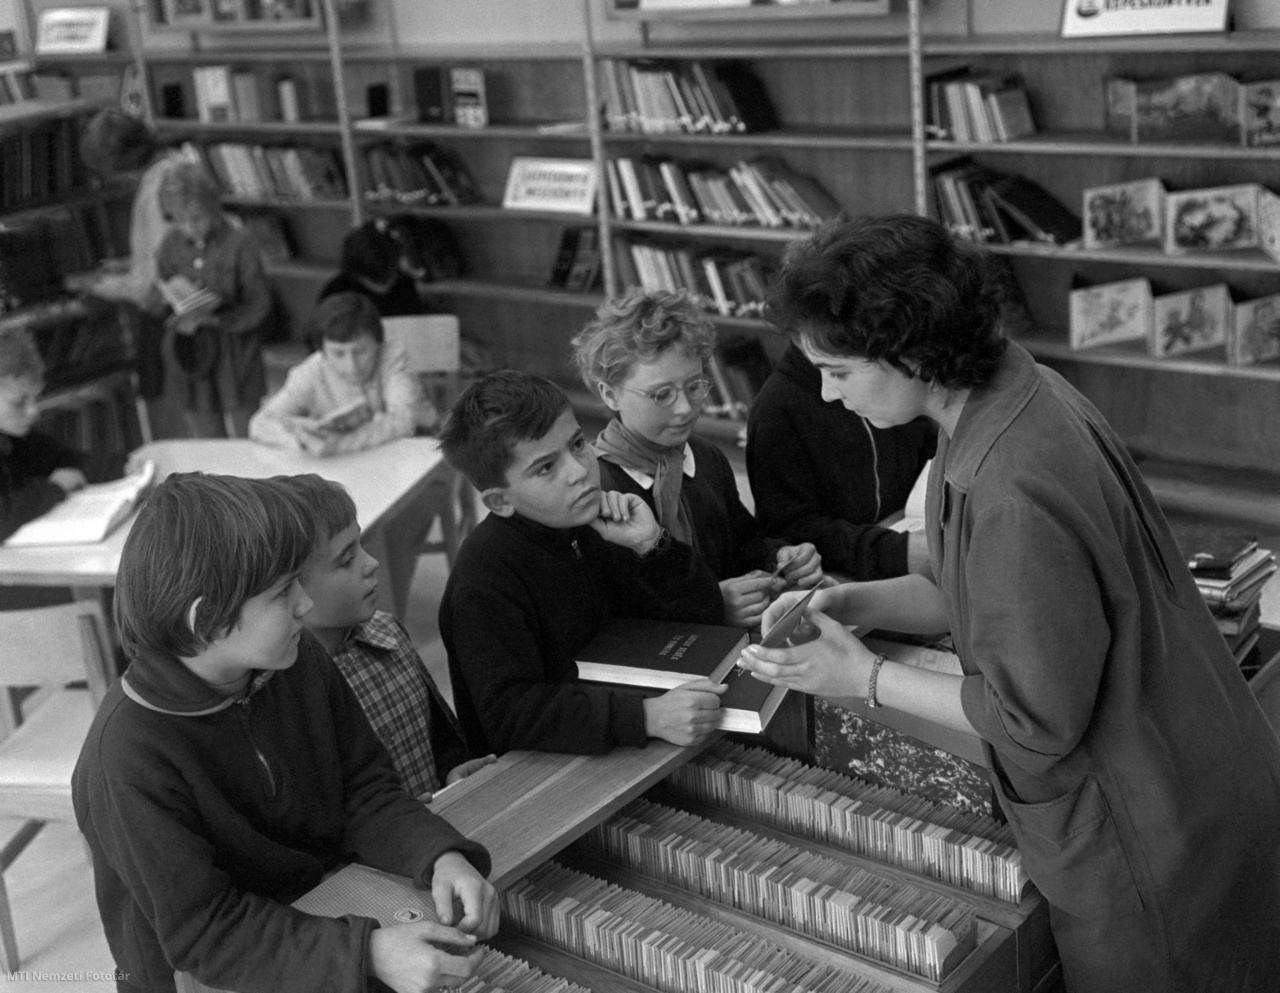 Tatabánya, 1964. október 13. Gyerekek beszélgetnek a könyvtárossal a Körner László Kossuth-díjas építőművész által tervezett, az ország egyik legkorszerűbb könyvtárának gyermekrészlegén. A földszintes, pavilonrendszerű könyvtár tágas, világos helyiségeiben szabad polcos felnőtt-, ifjúsági és gyermekrészleget rendeztek be, és mintegy százezer kötet áll az olvasók rendelkezésére